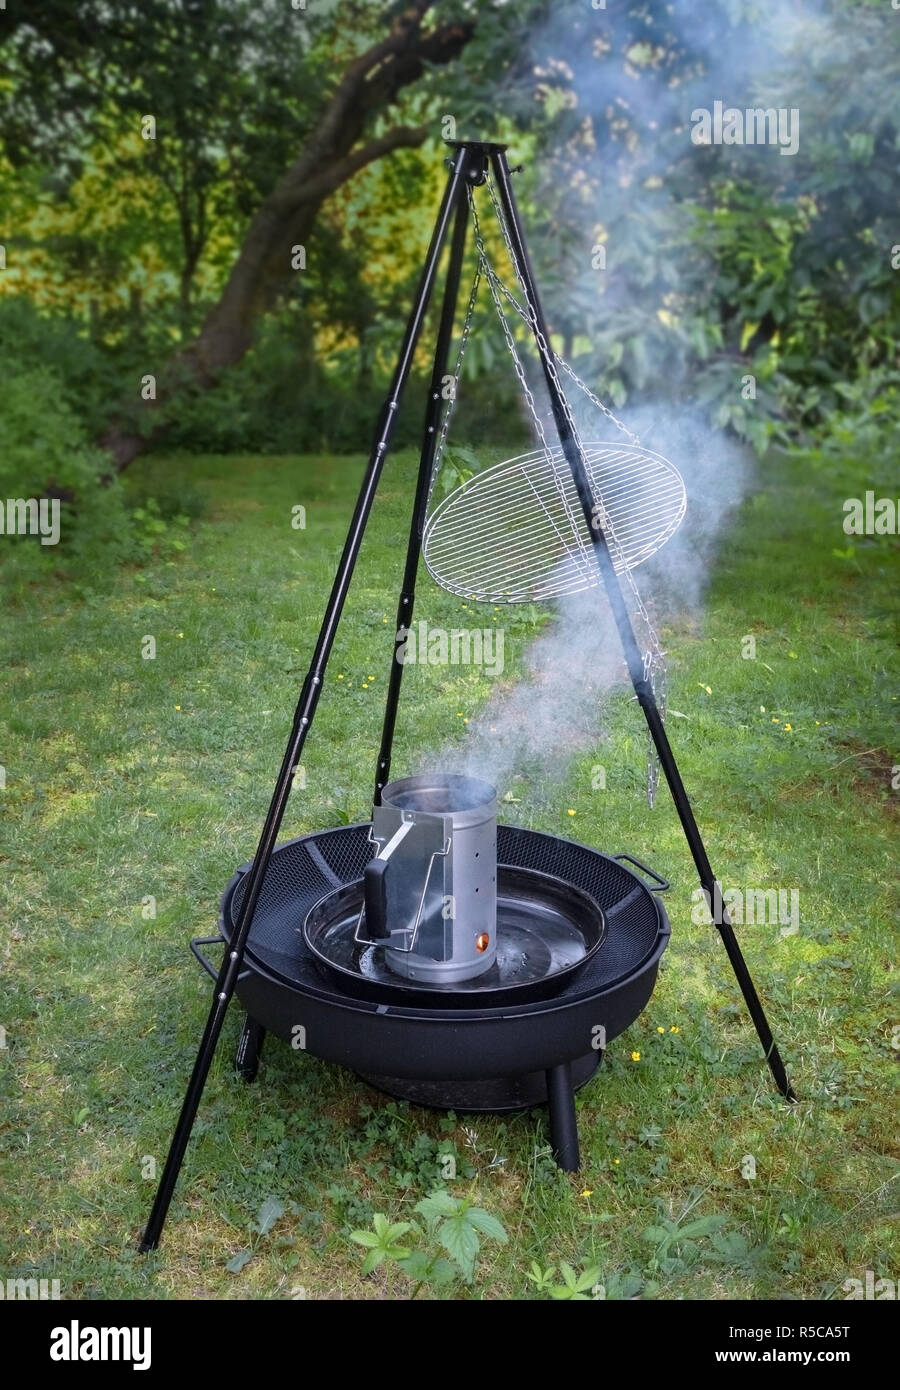 Rauchender Grill Holzkohle Chimney Starter auf einem schwarzen Stativ schwenken Grill im Garten Stockfoto